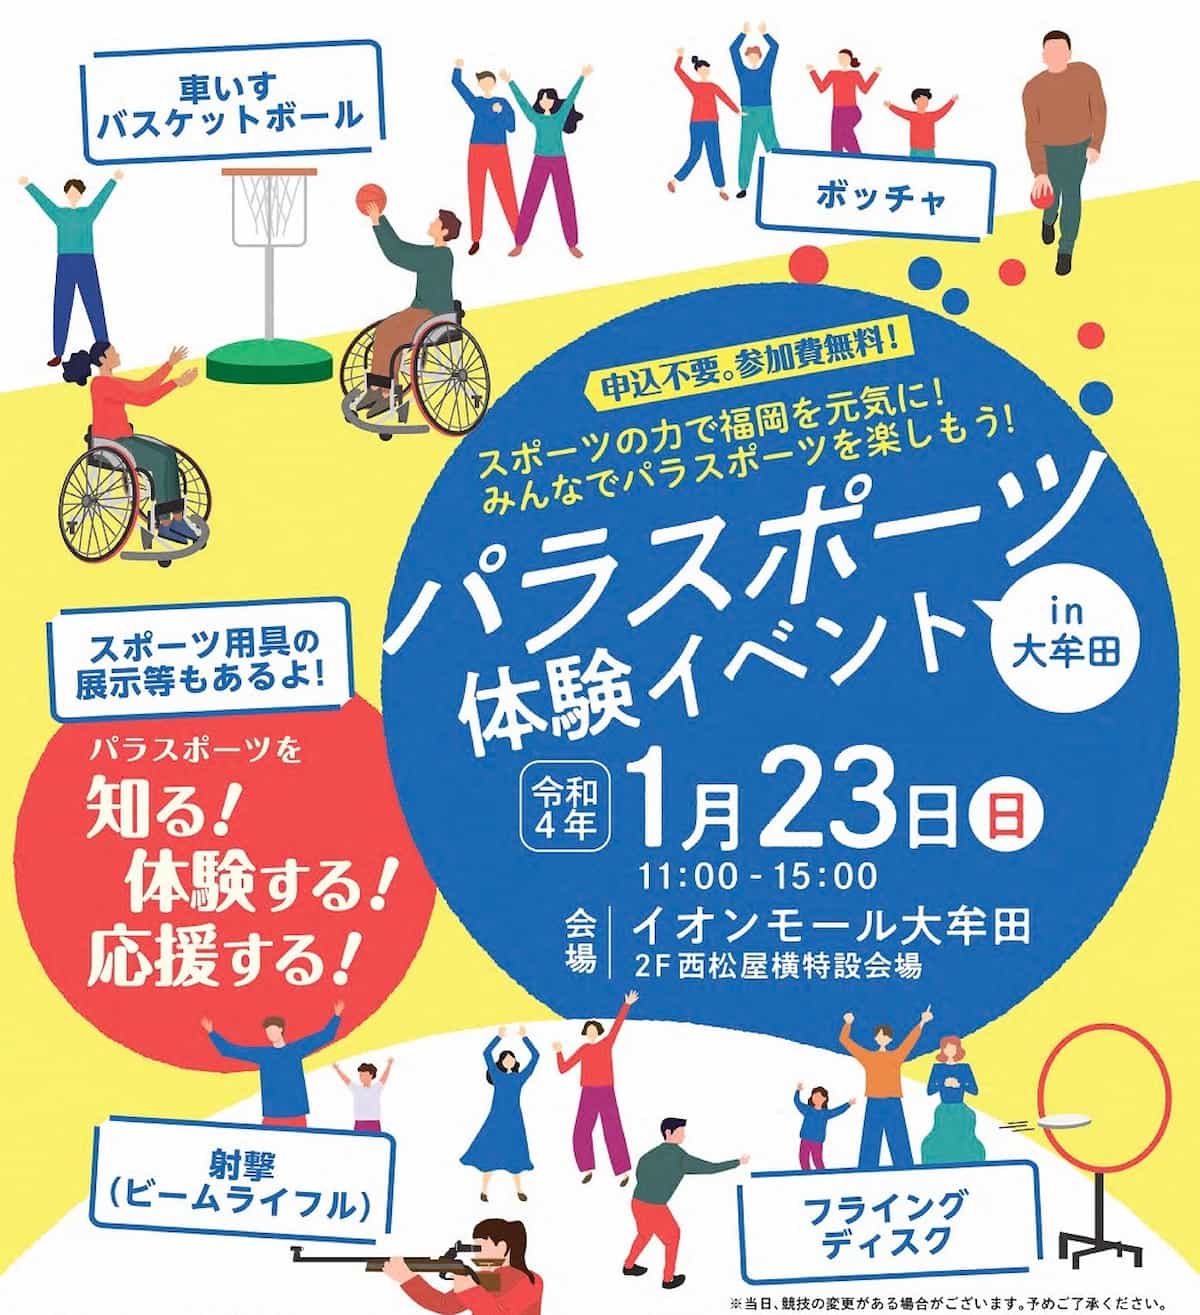 パラスポーツ体験イベント in 大牟田って誰でもパラスポーツを楽しめるイベントが開催されるみたい